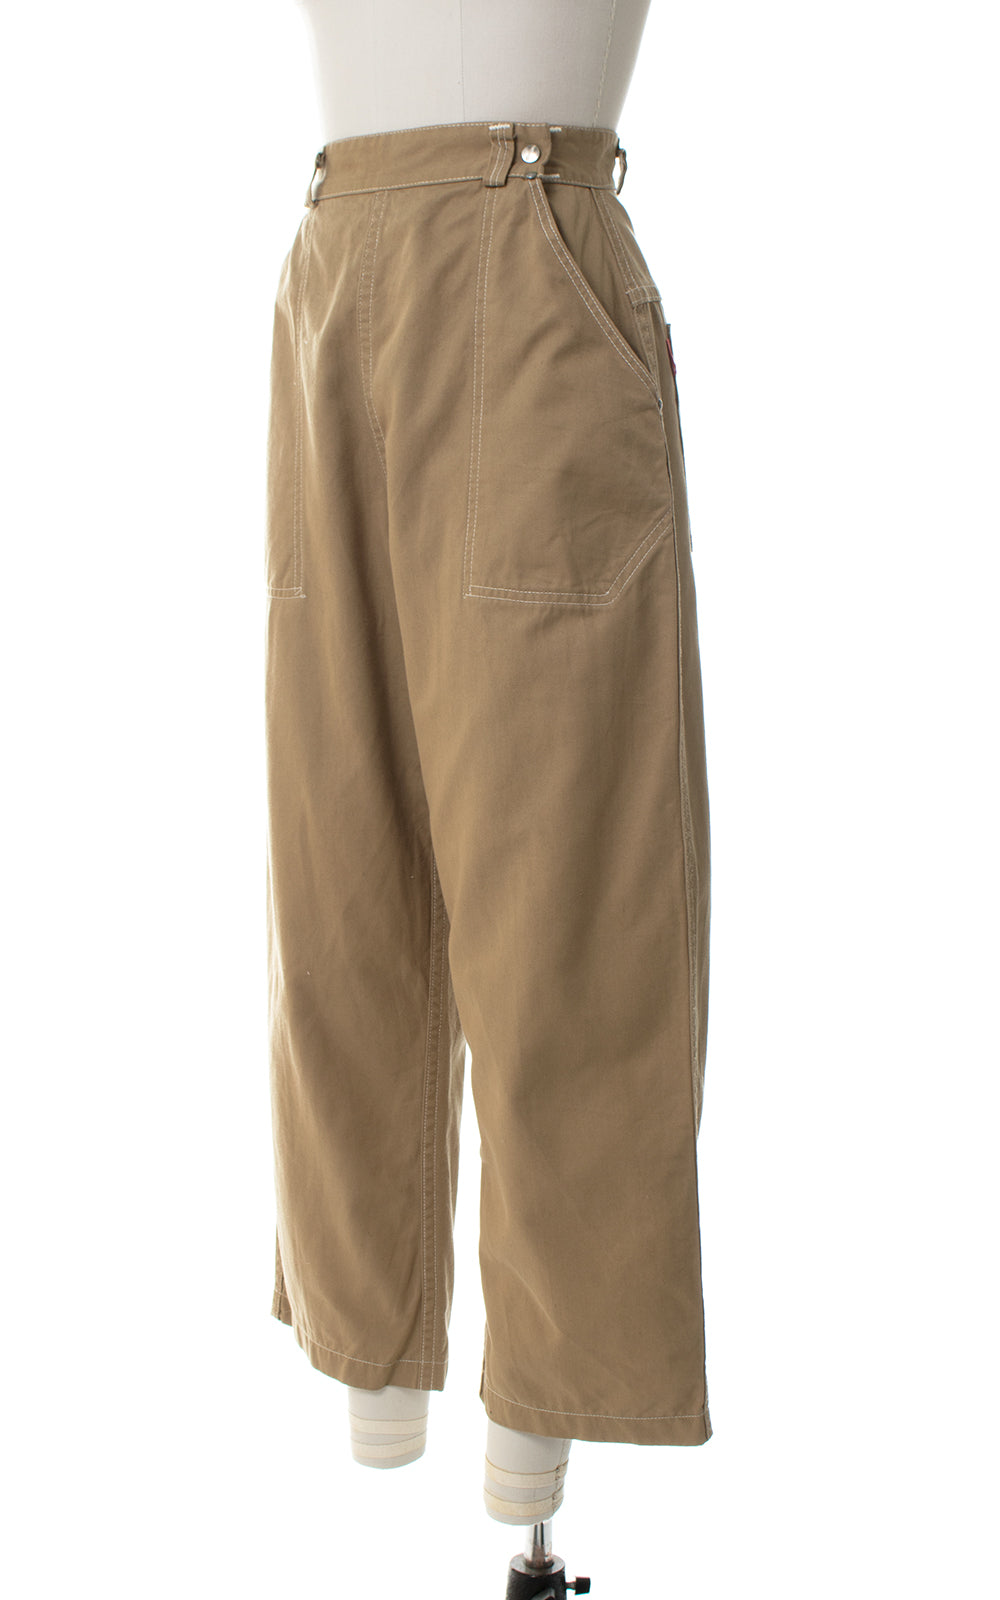 1950s Khaki High Waist Capri Pants